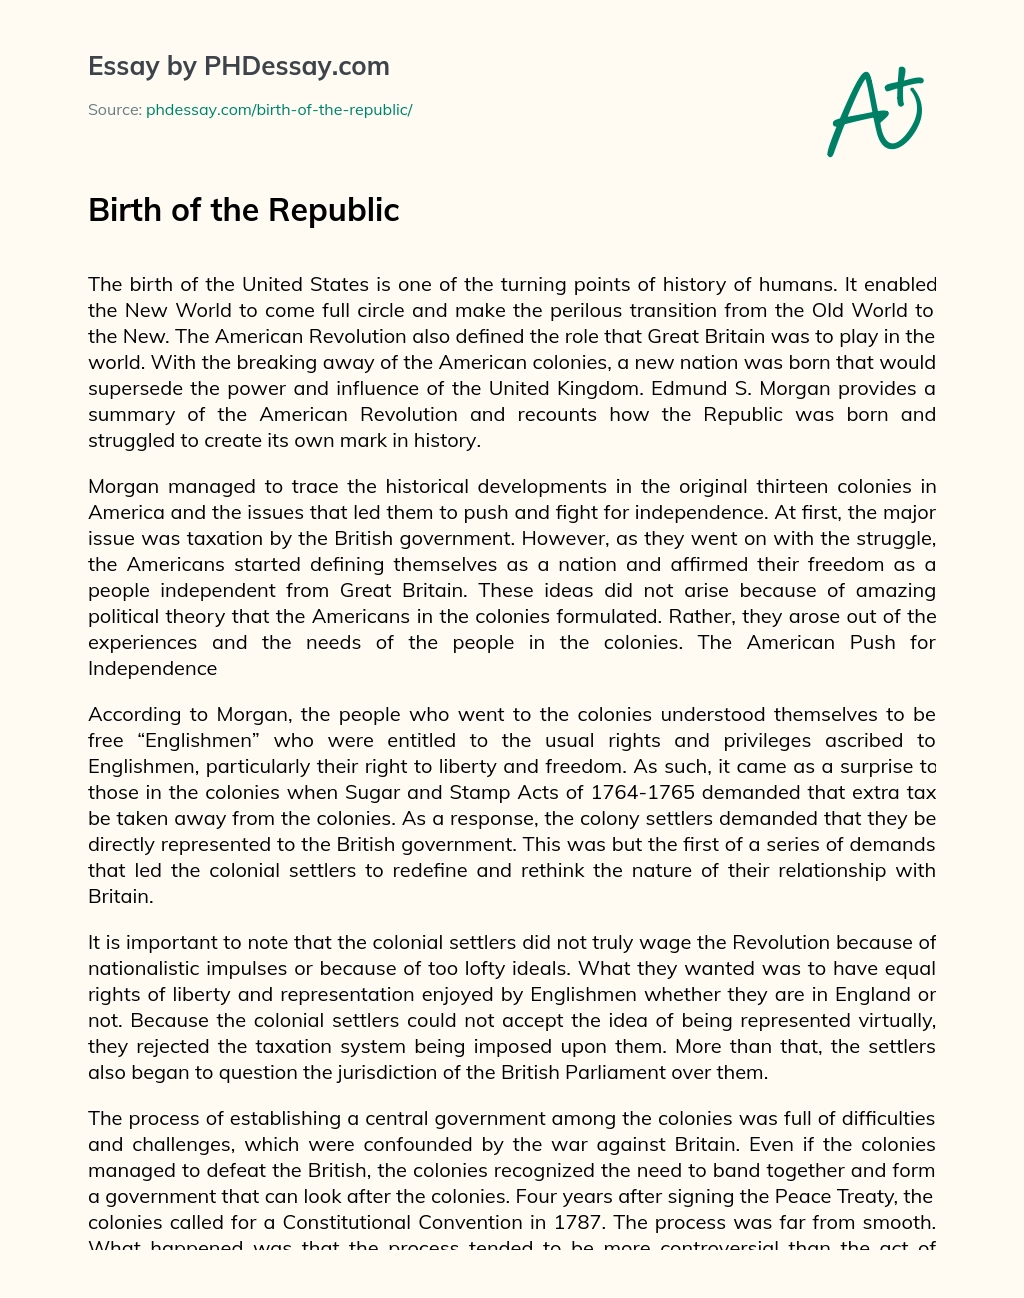 Birth of the Republic essay